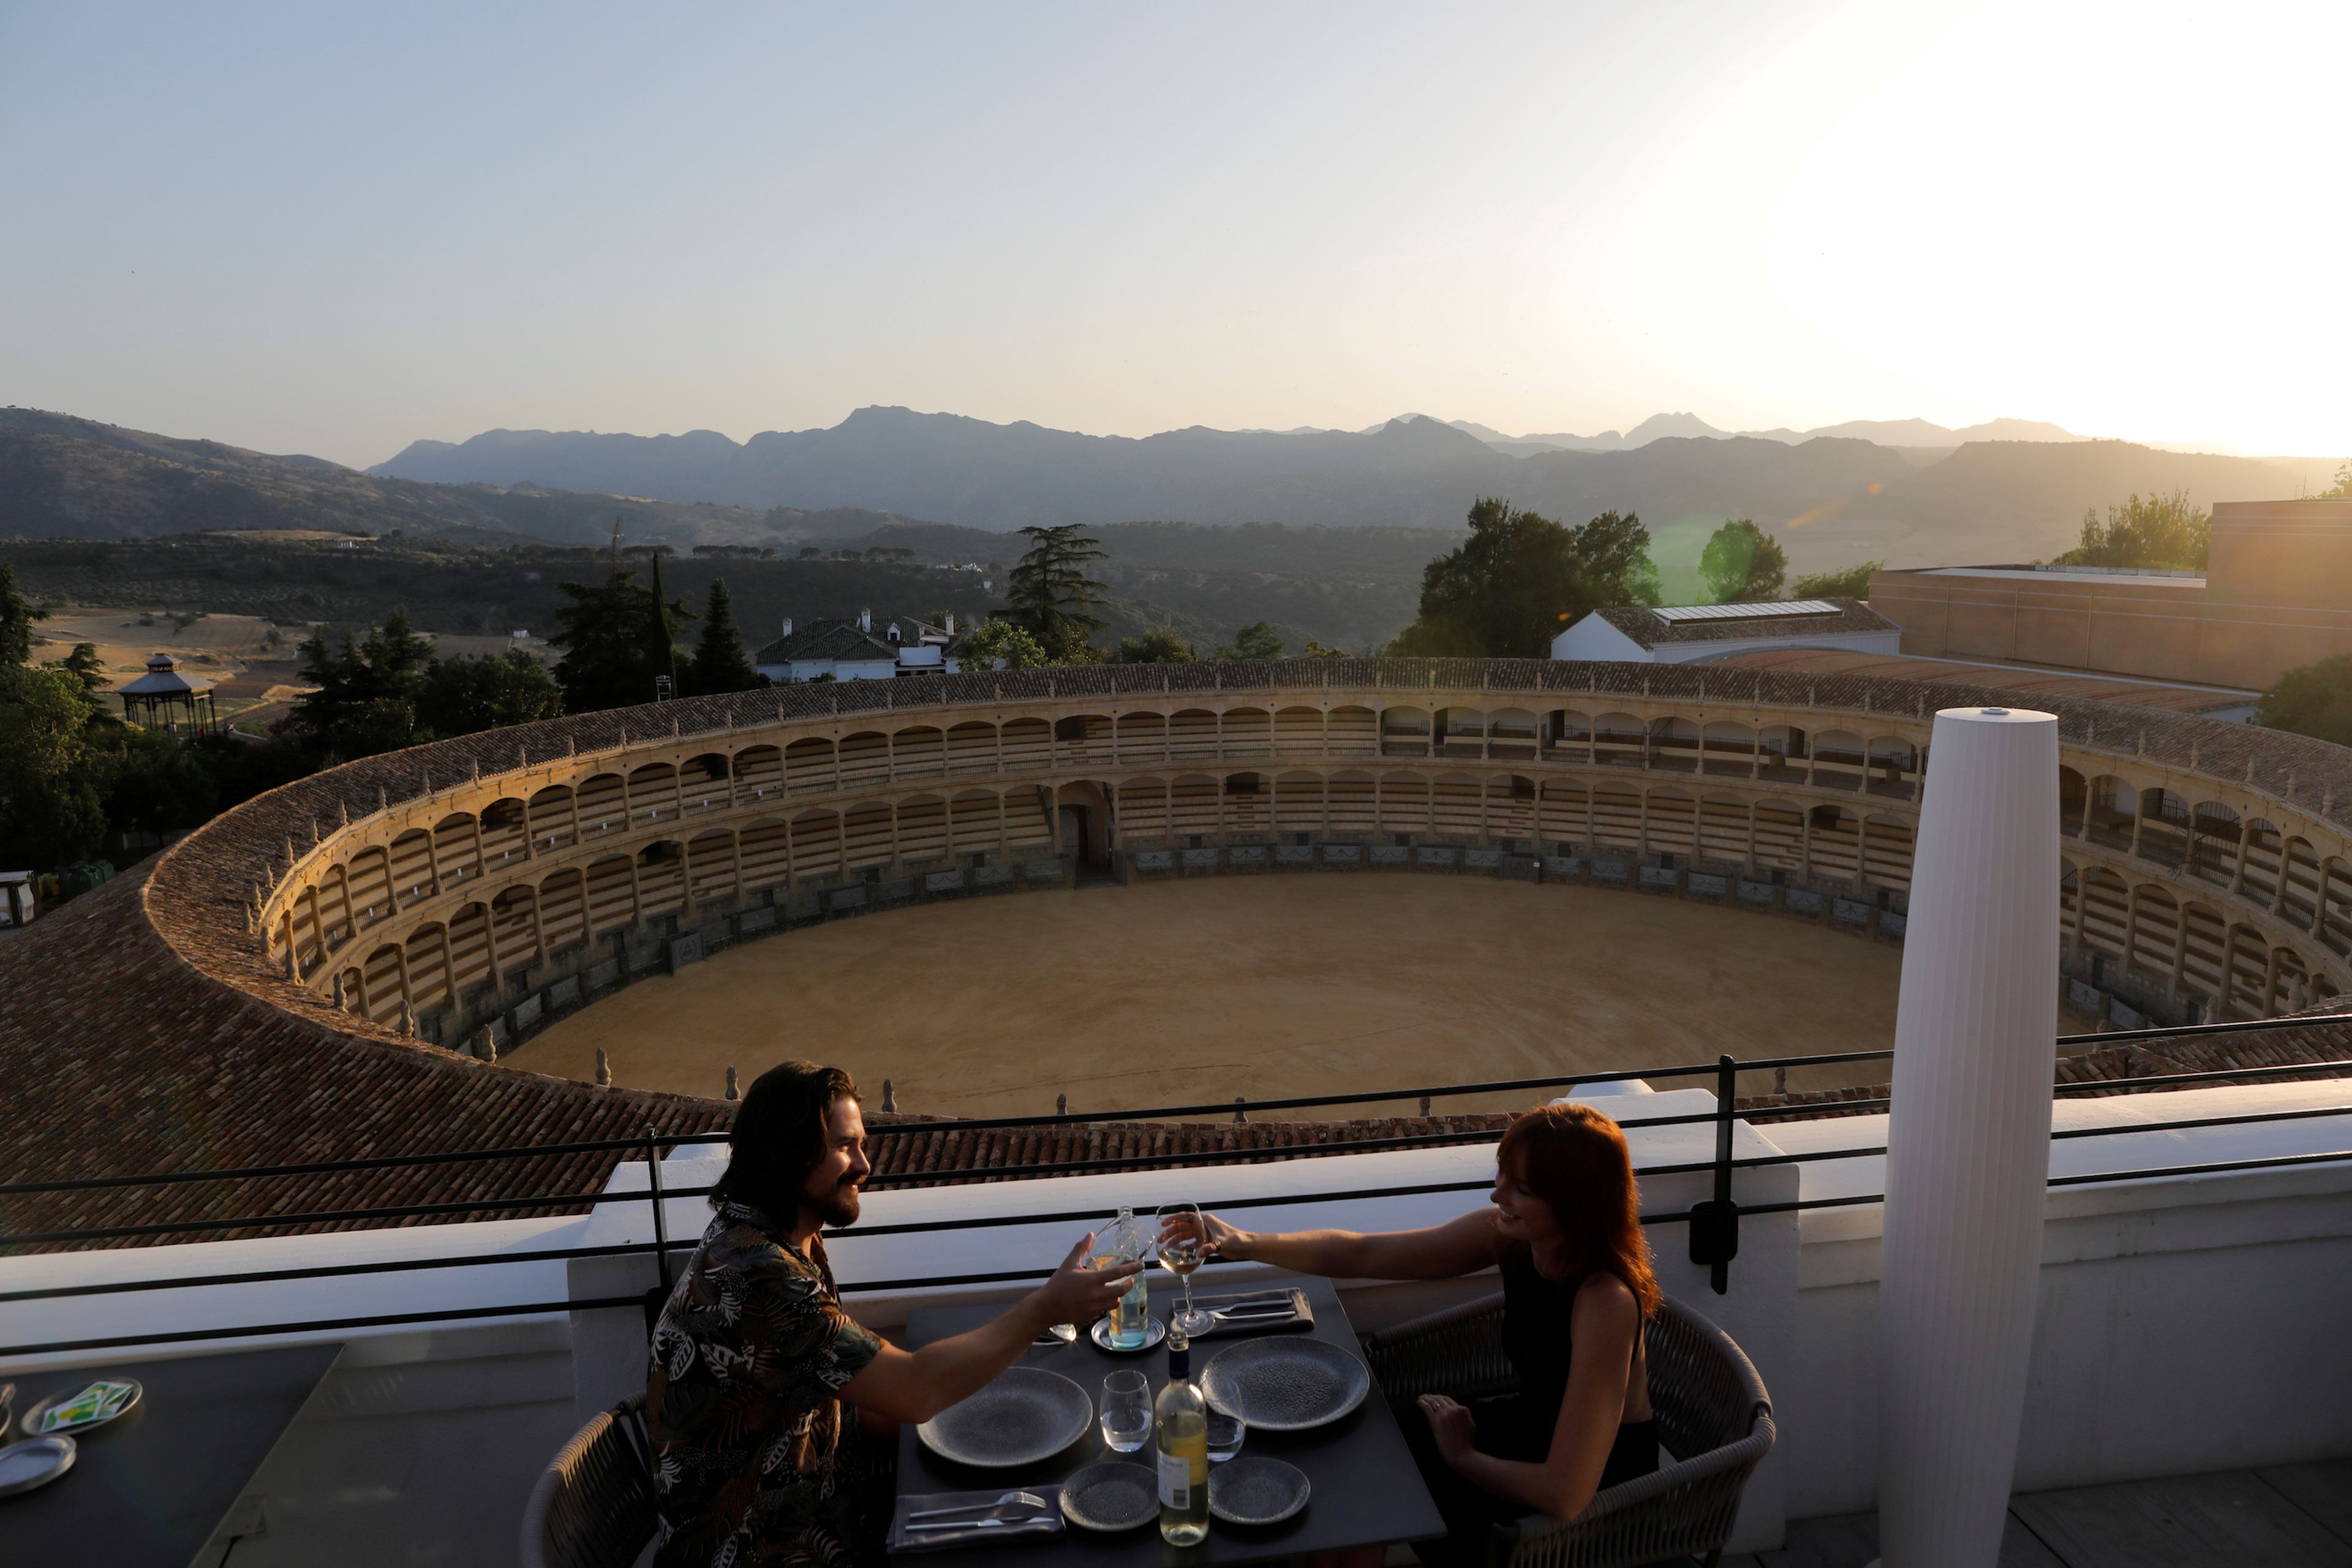 Una pareja de turistas brinda en la terraza de un hotel de ronda tras el alivio de las restricciones por el coronavirus.